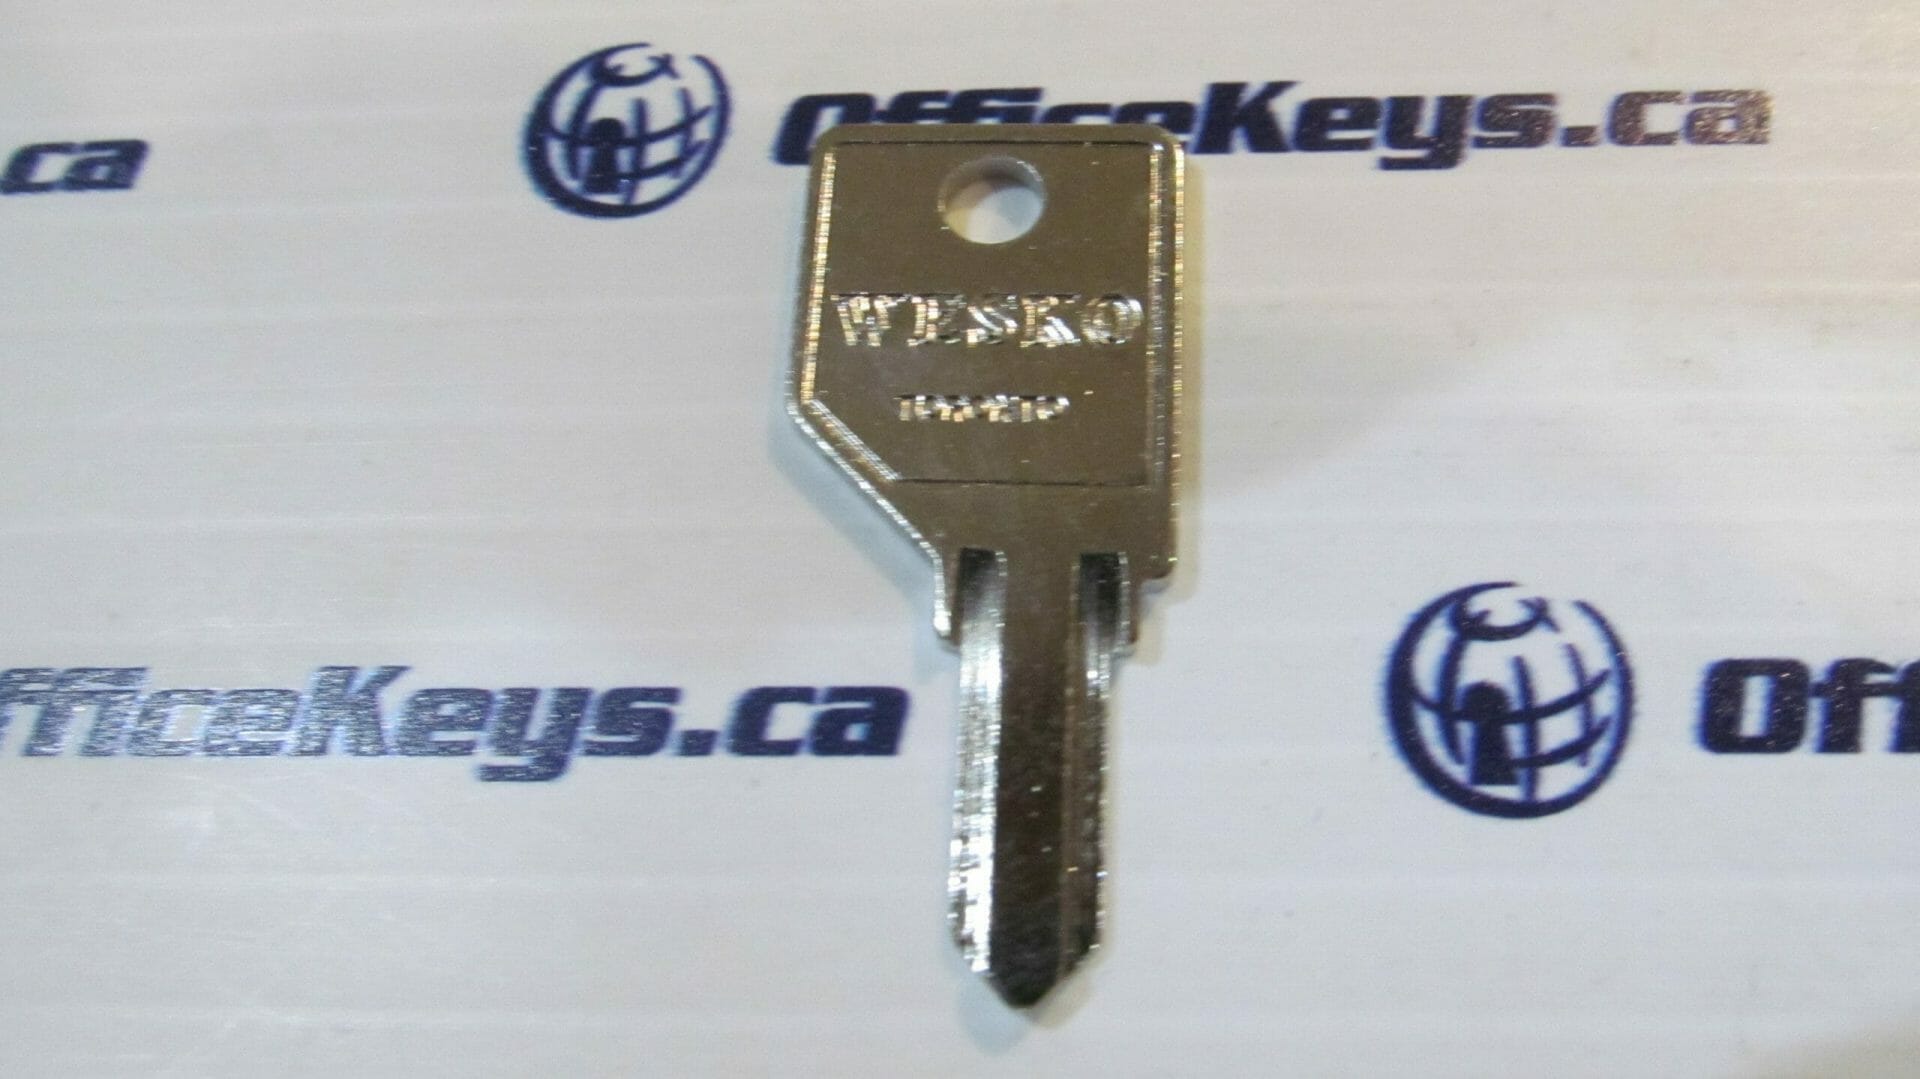 Wesko Lock MK Key Blank (Double Sided)